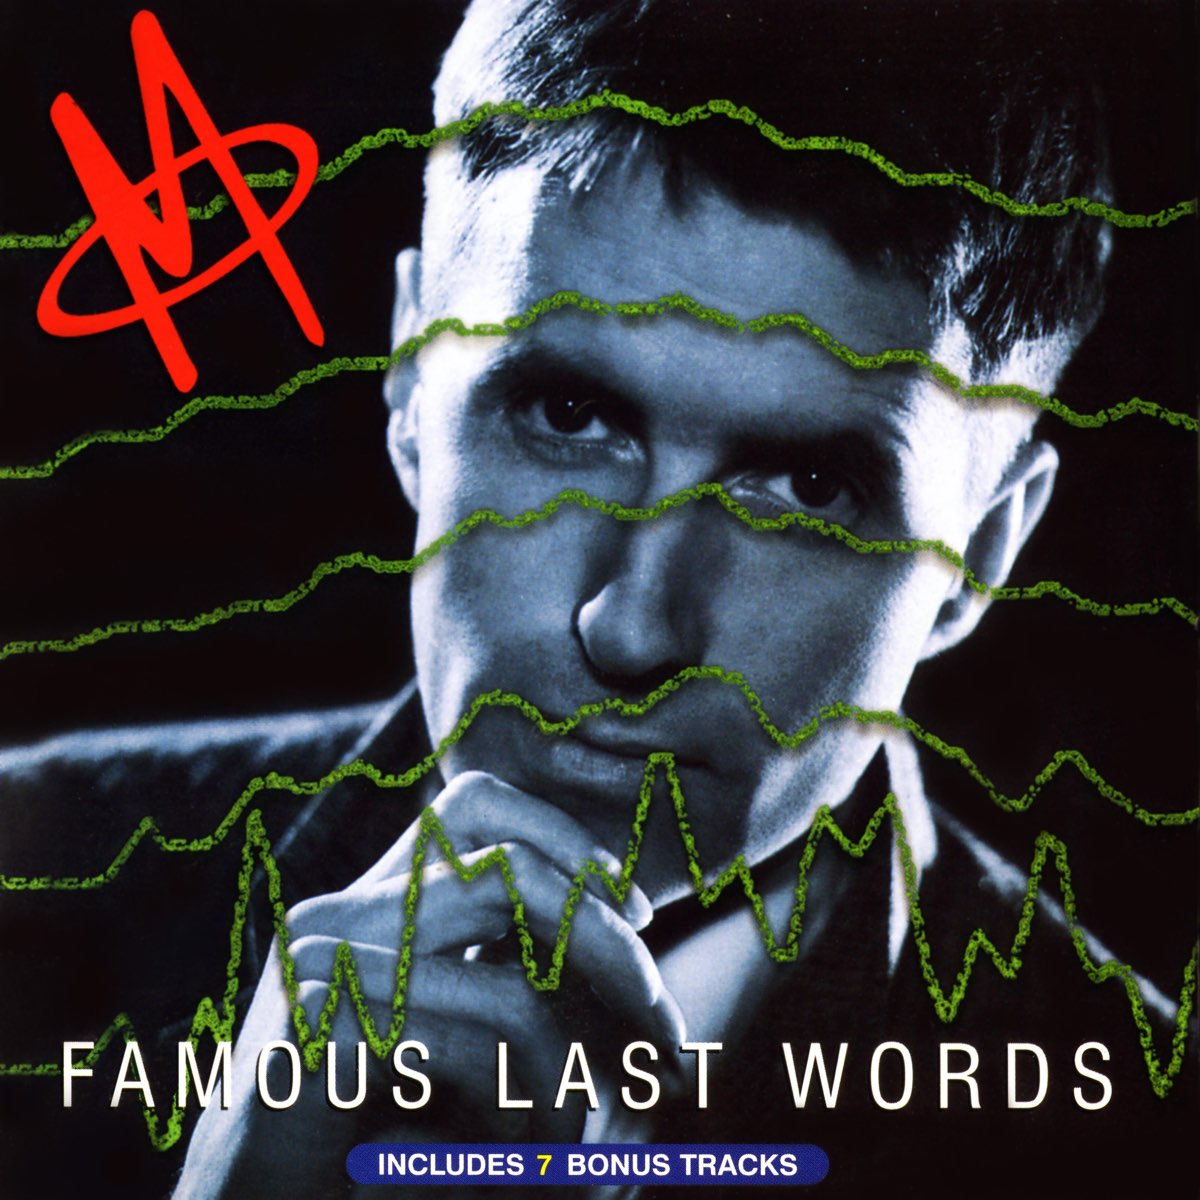 Famous Last Words - Album by M - Apple Music